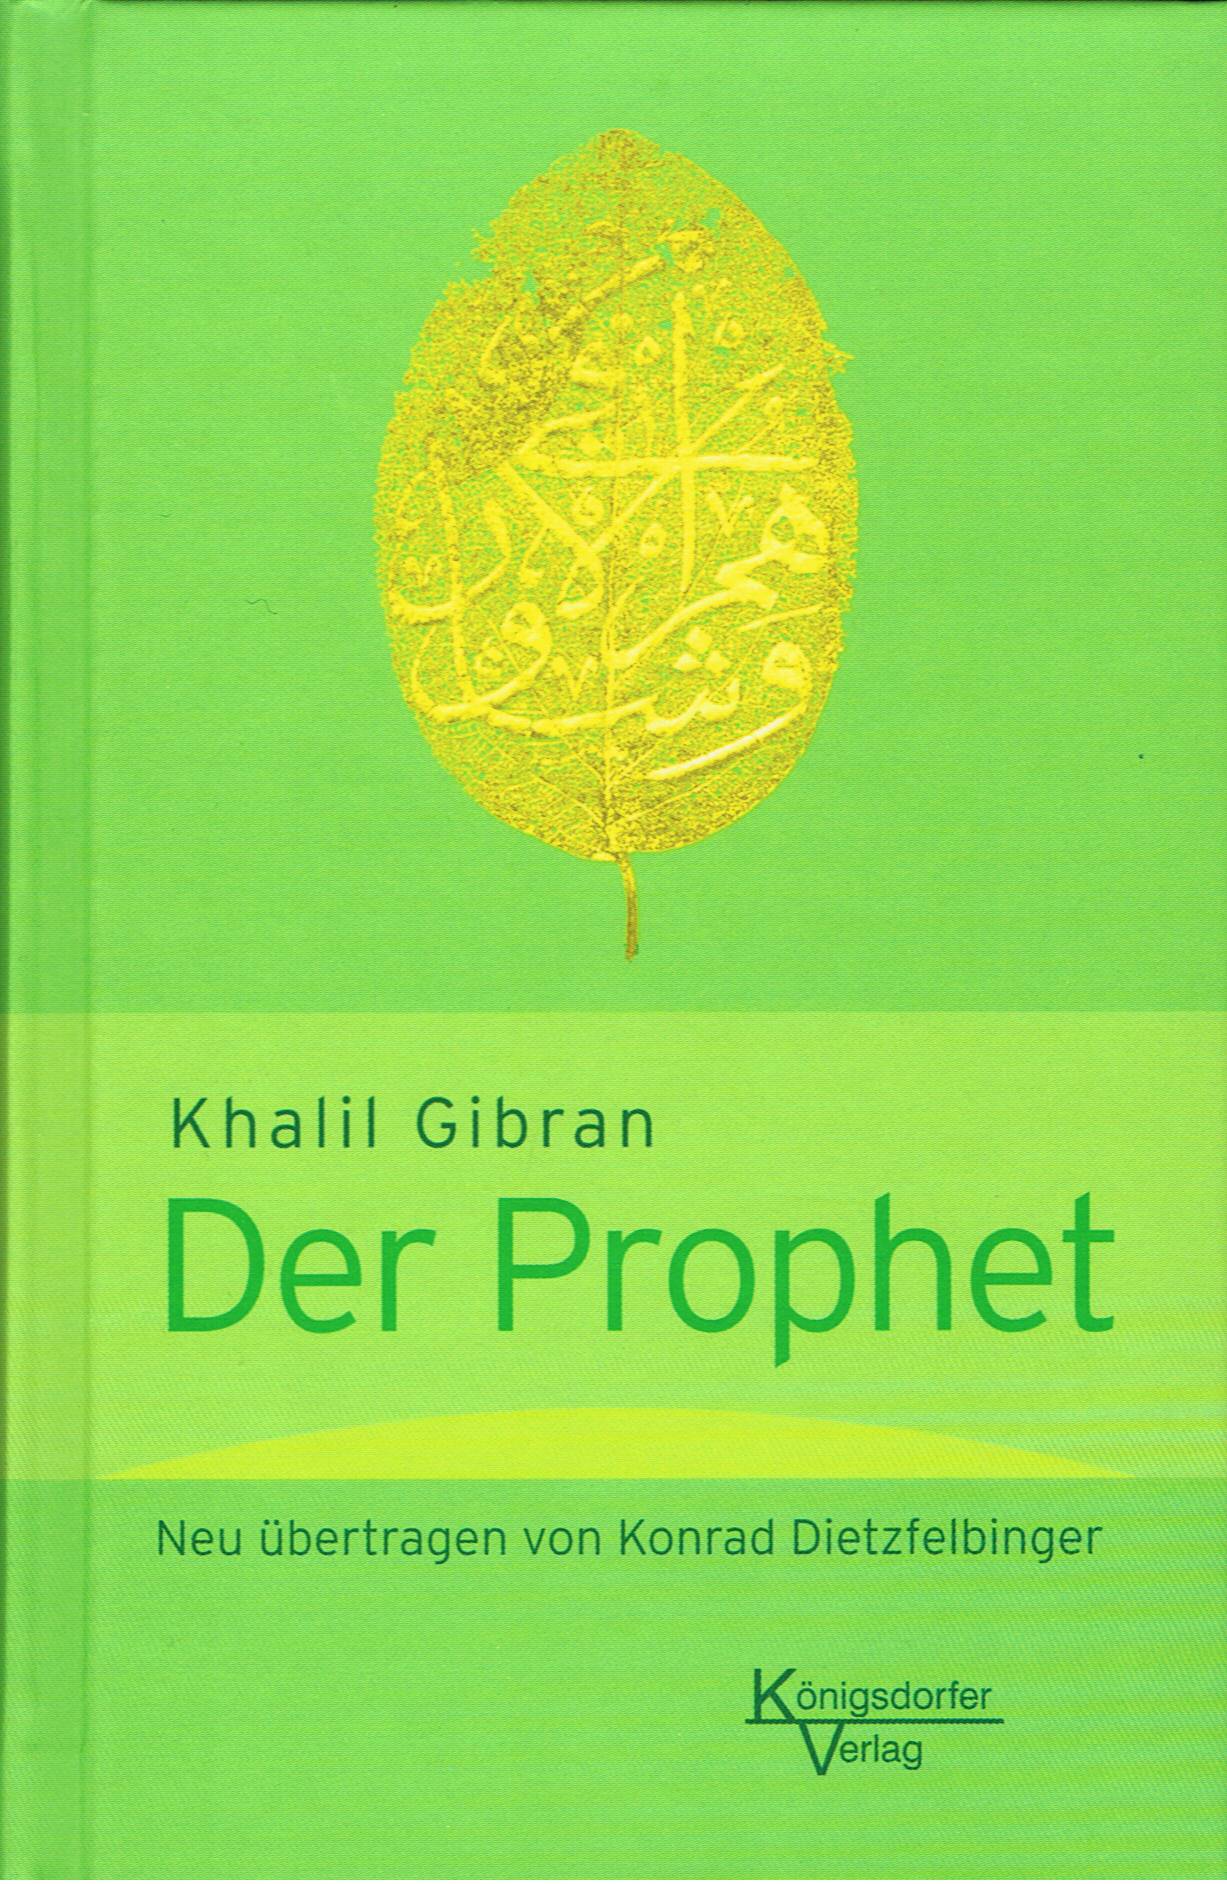 Khalil Gibran - Der Prophet